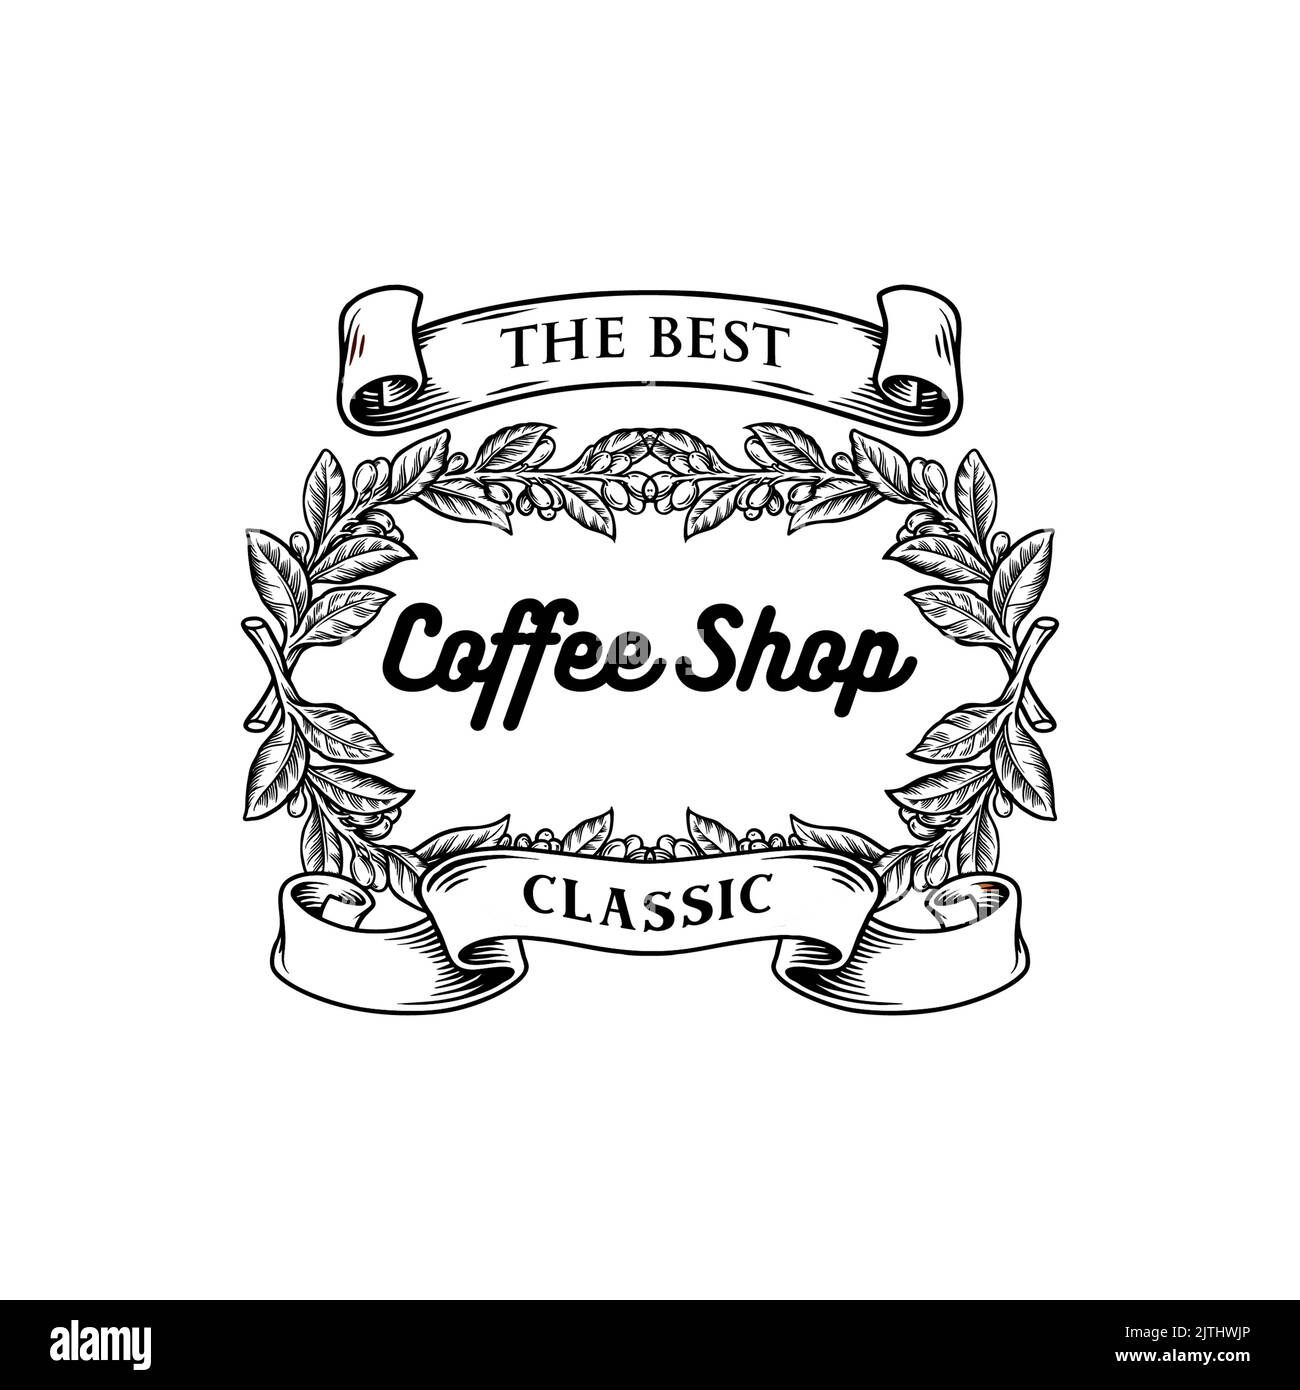 Coffee Shop Classic con nastro Vintage Silhouette illustrazioni vettoriali per il tuo lavoro Logo, mascotte merchandise t-shirt, adesivi e disegni di etichette, po Foto Stock